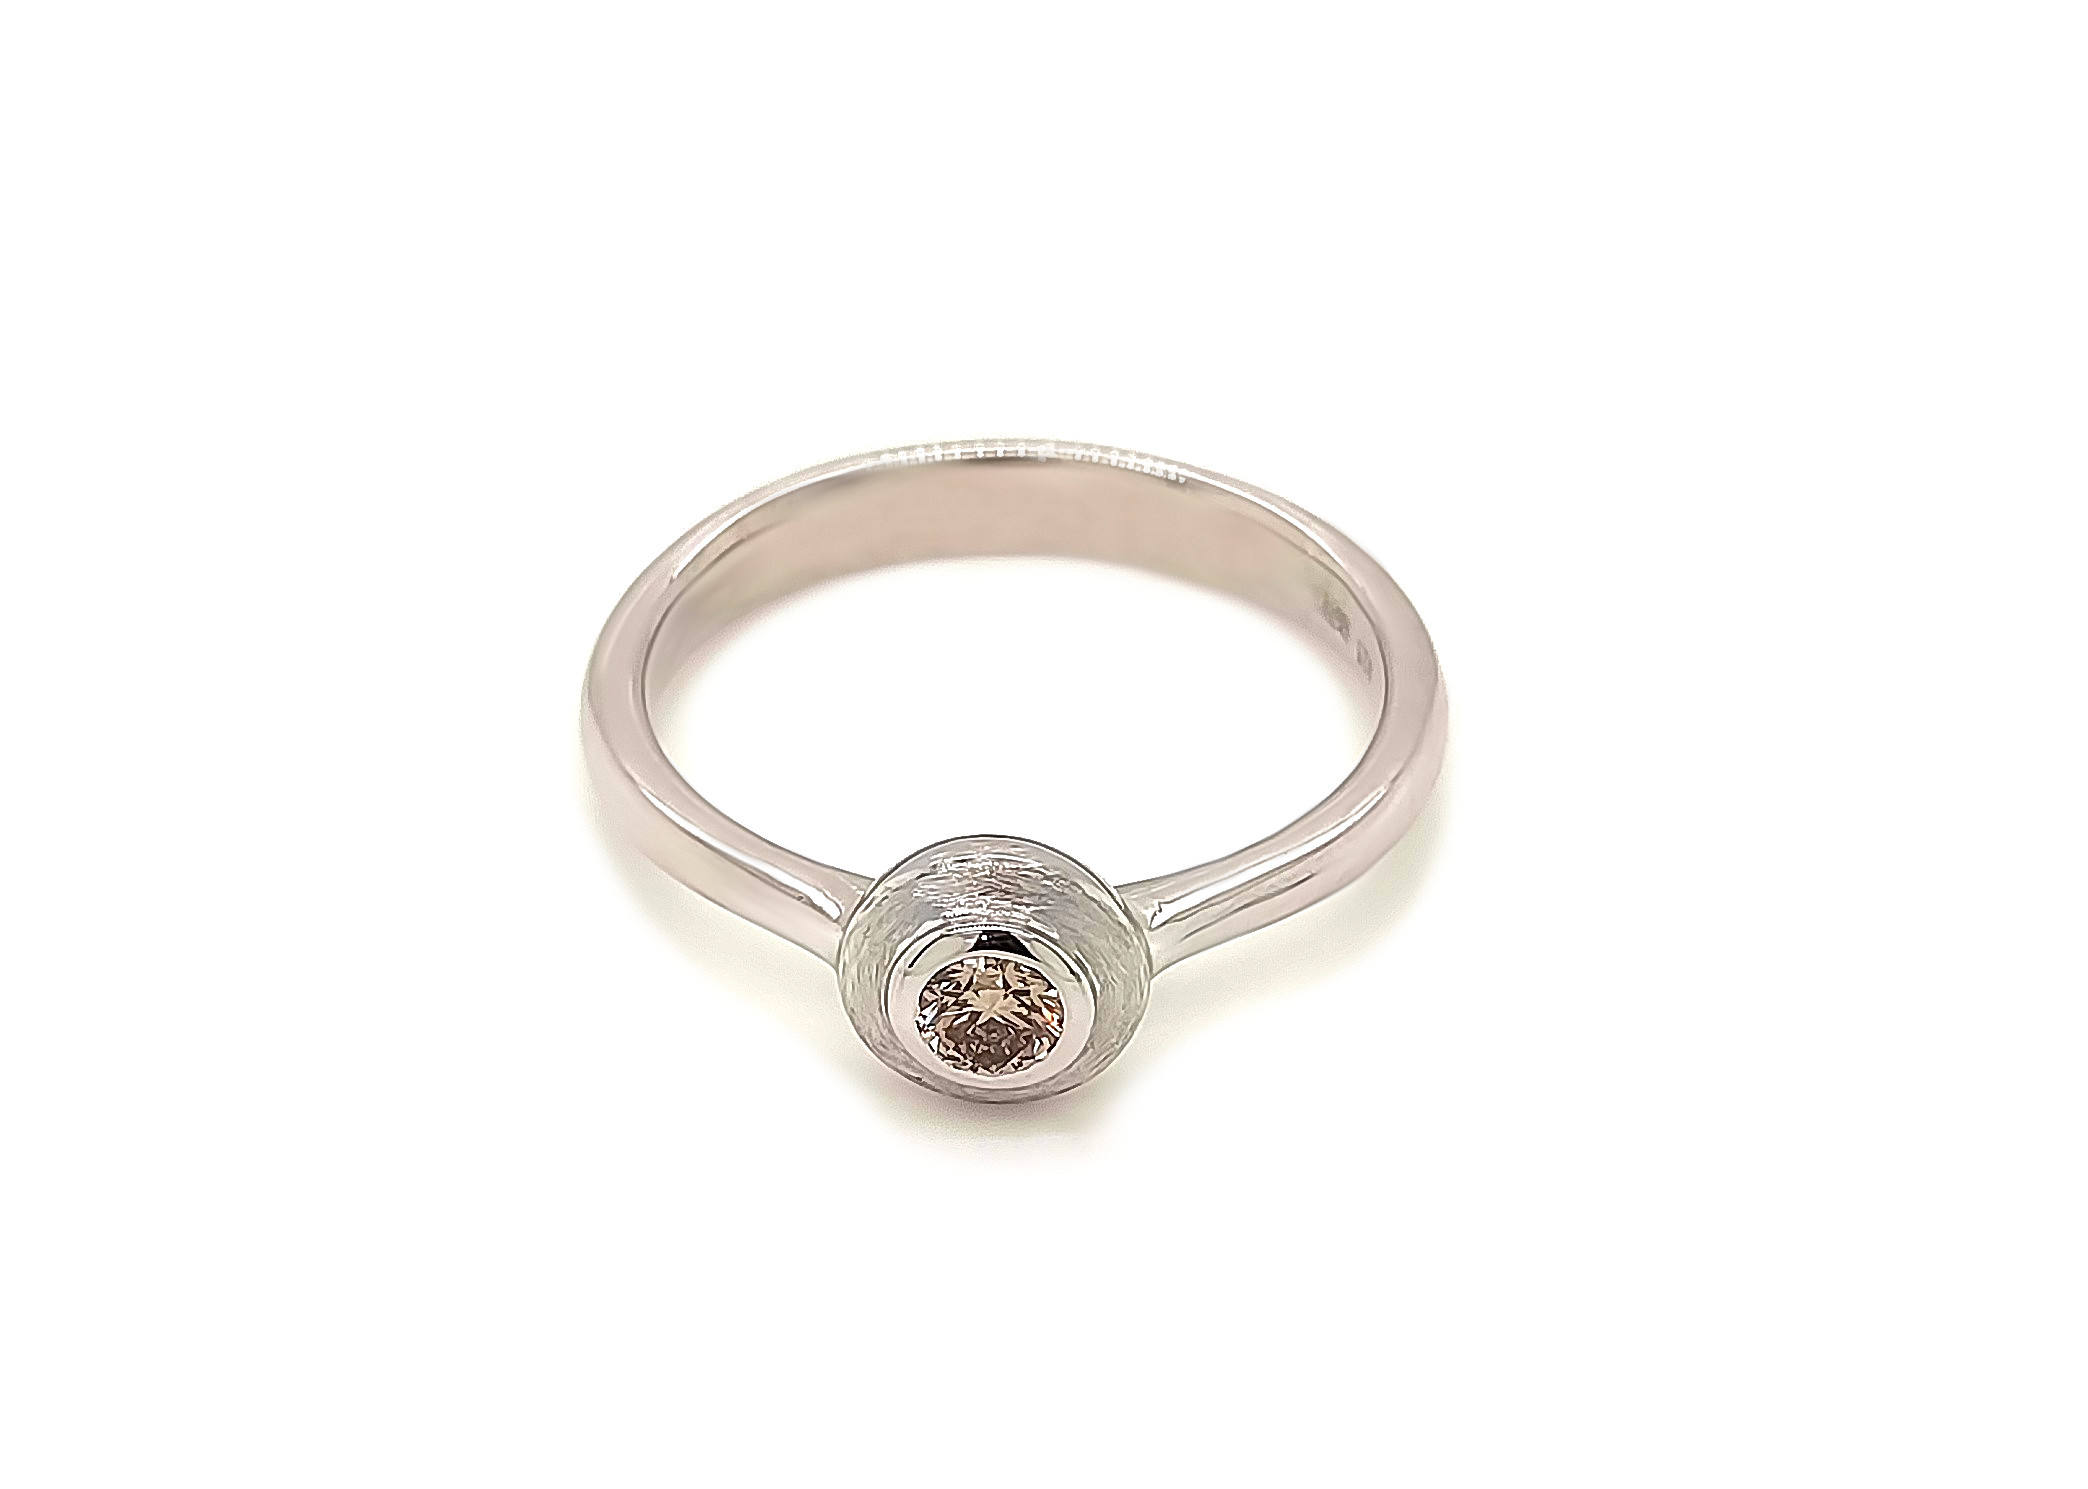 Brillant, rund facettiert, ca. 0,150 ct. Edelstein Ring Silber 925/000 Conradt Manufaktur